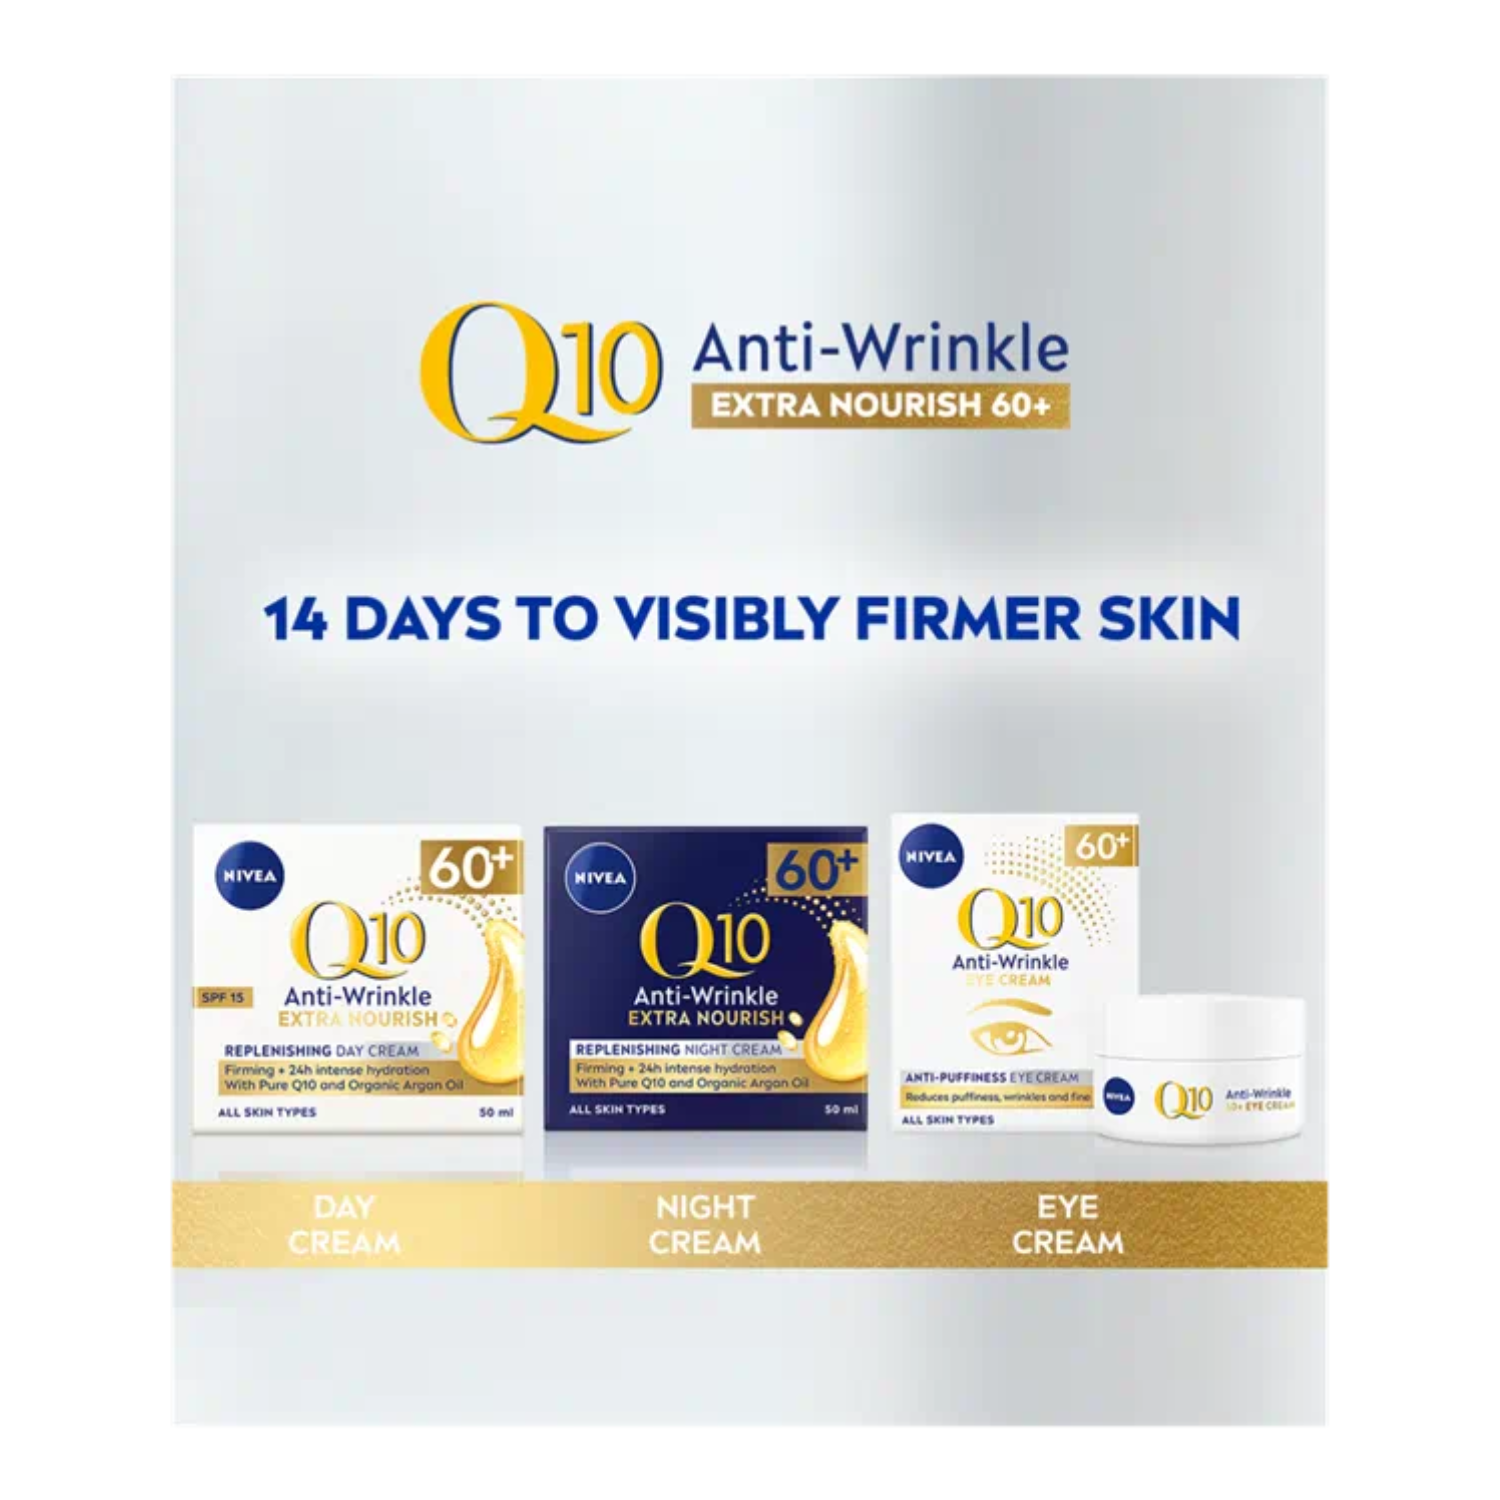 Kem dưỡng chống lão hoá mạnh Nivea Q10 Power Anti Wrinkle + Replenishing Cream 60+ 50ml